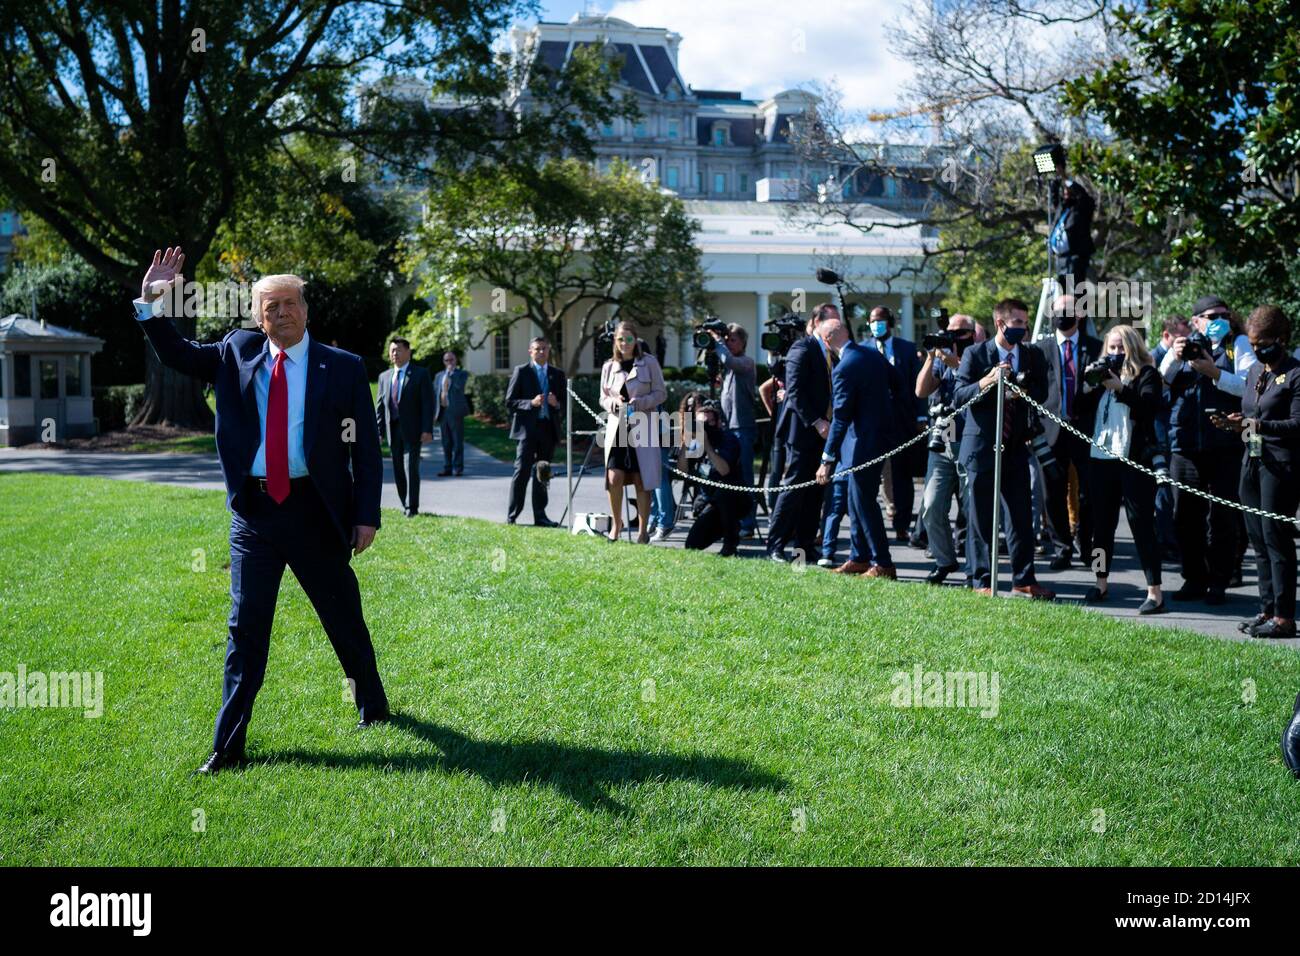 El presidente Trump viaja a MN. El presidente Donald J. Trump hace olas mientras camina por el South Lawn of the White House el miércoles, 30 de septiembre de 2020, para abordar Marine One de camino a la base conjunta Andrews, Maryland, para comenzar su viaje a Minnesota. Foto de stock